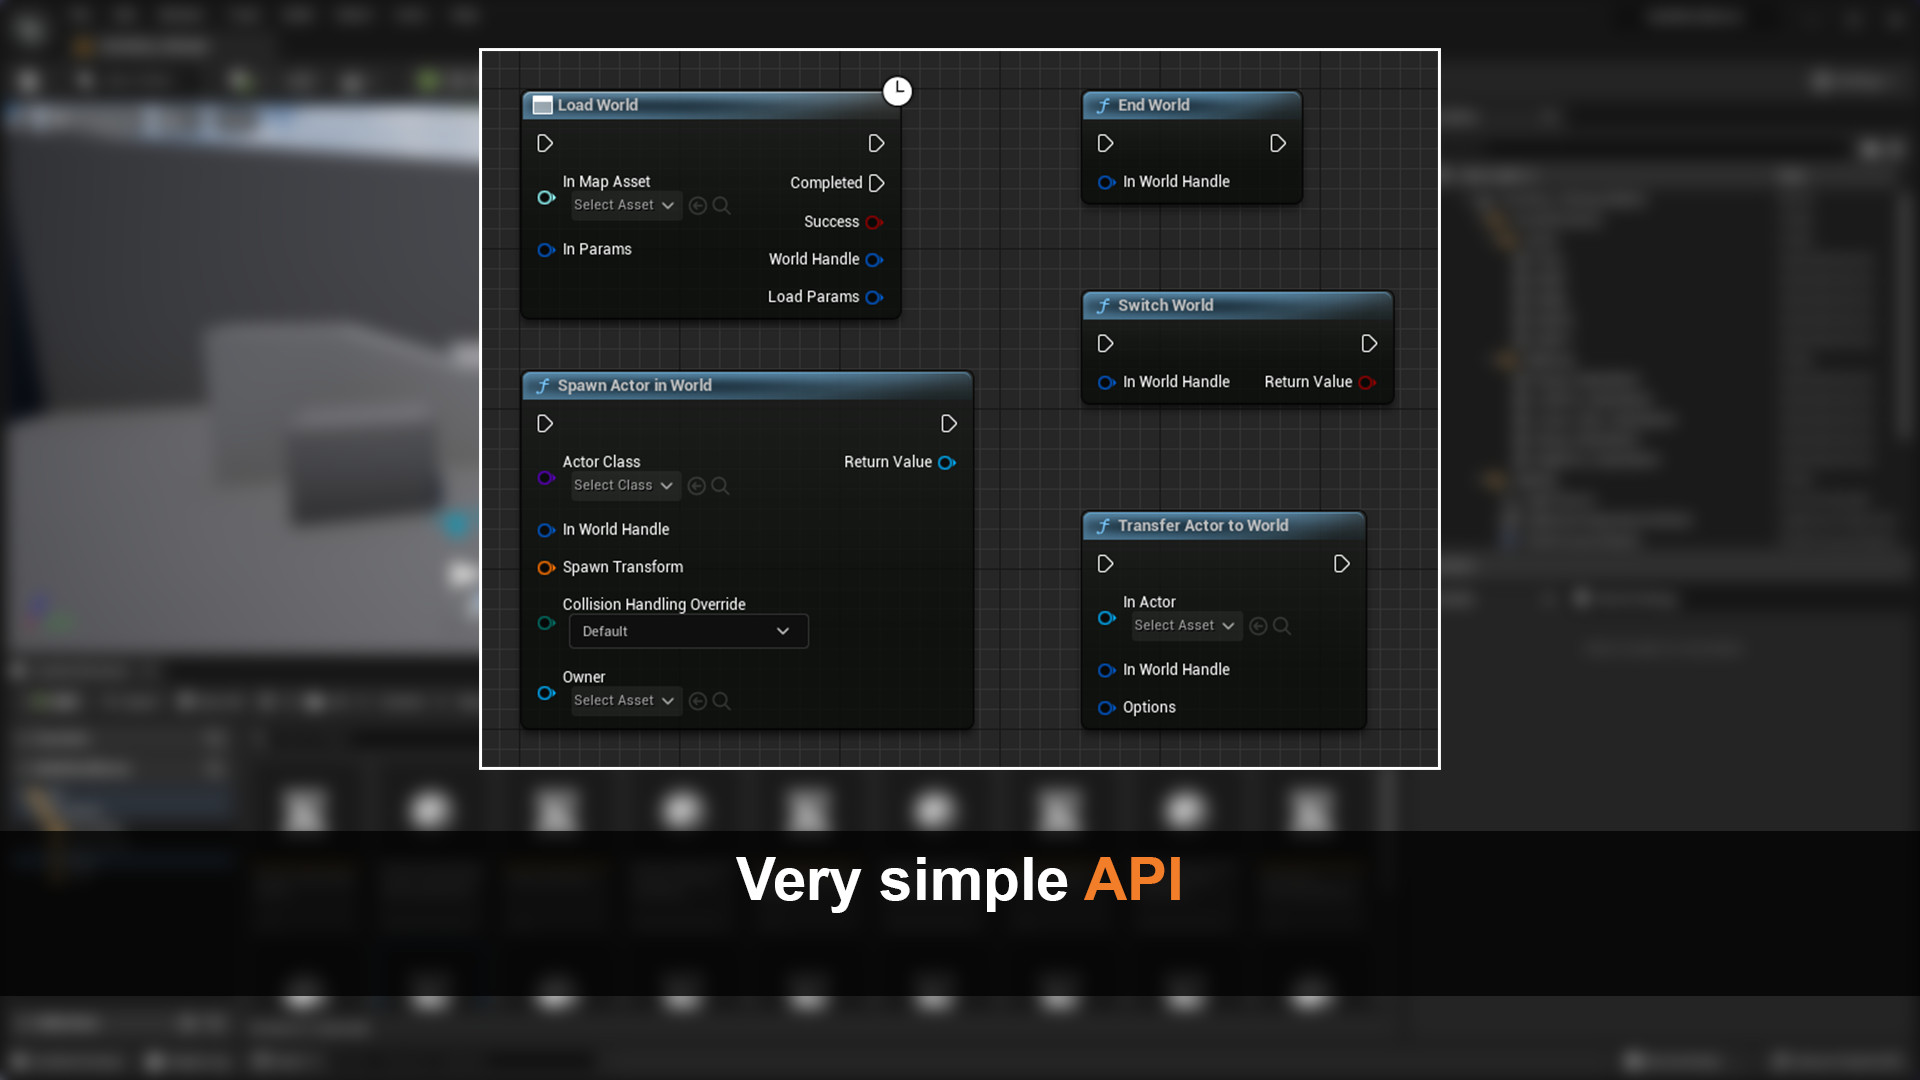 Very simple API